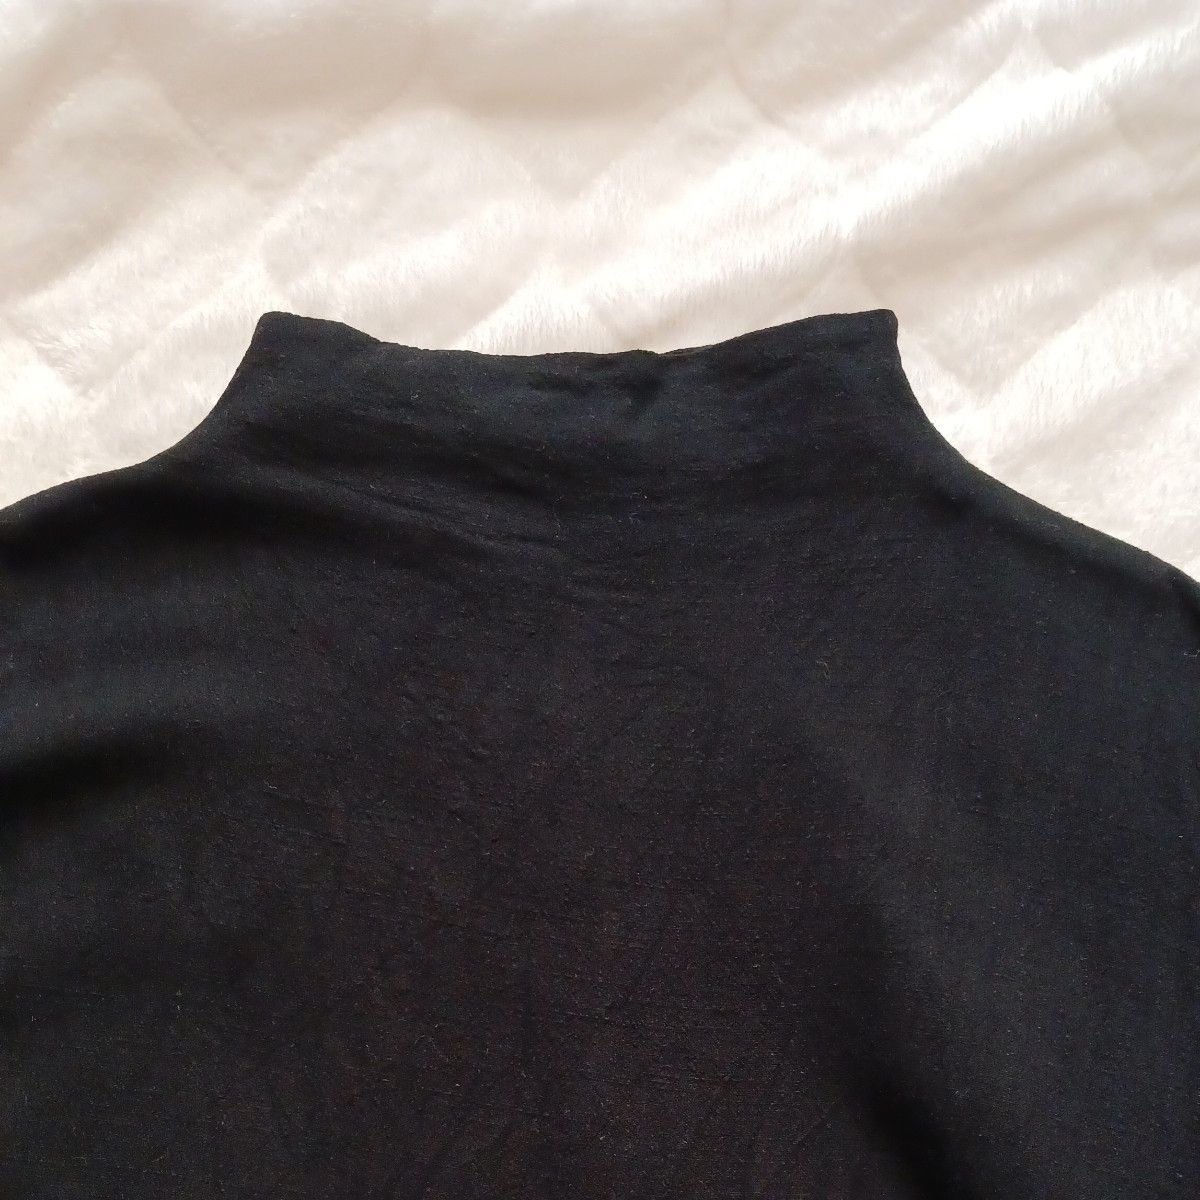 antiqua アンティカ ボトルネック ドルマン トップス 半袖 黒 ブラック カットソー Tシャツ サイズ FREE